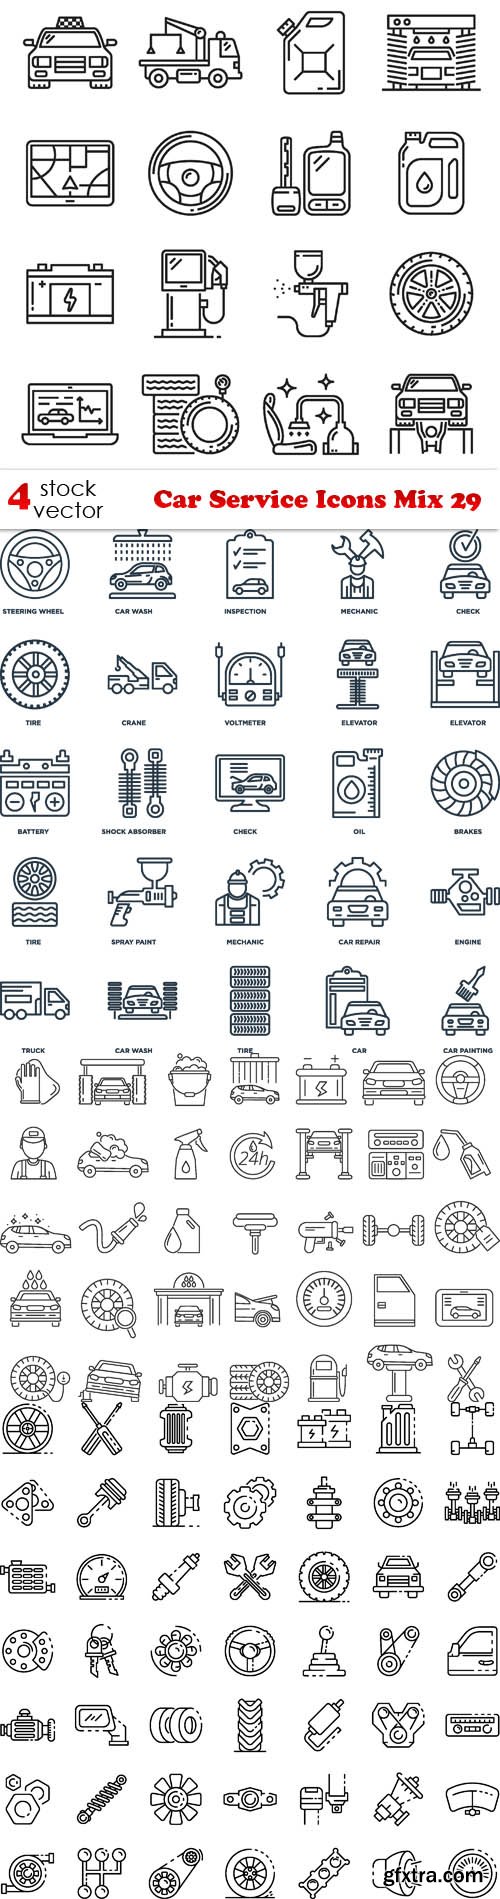 Vectors - Car Service Icons Mix 29